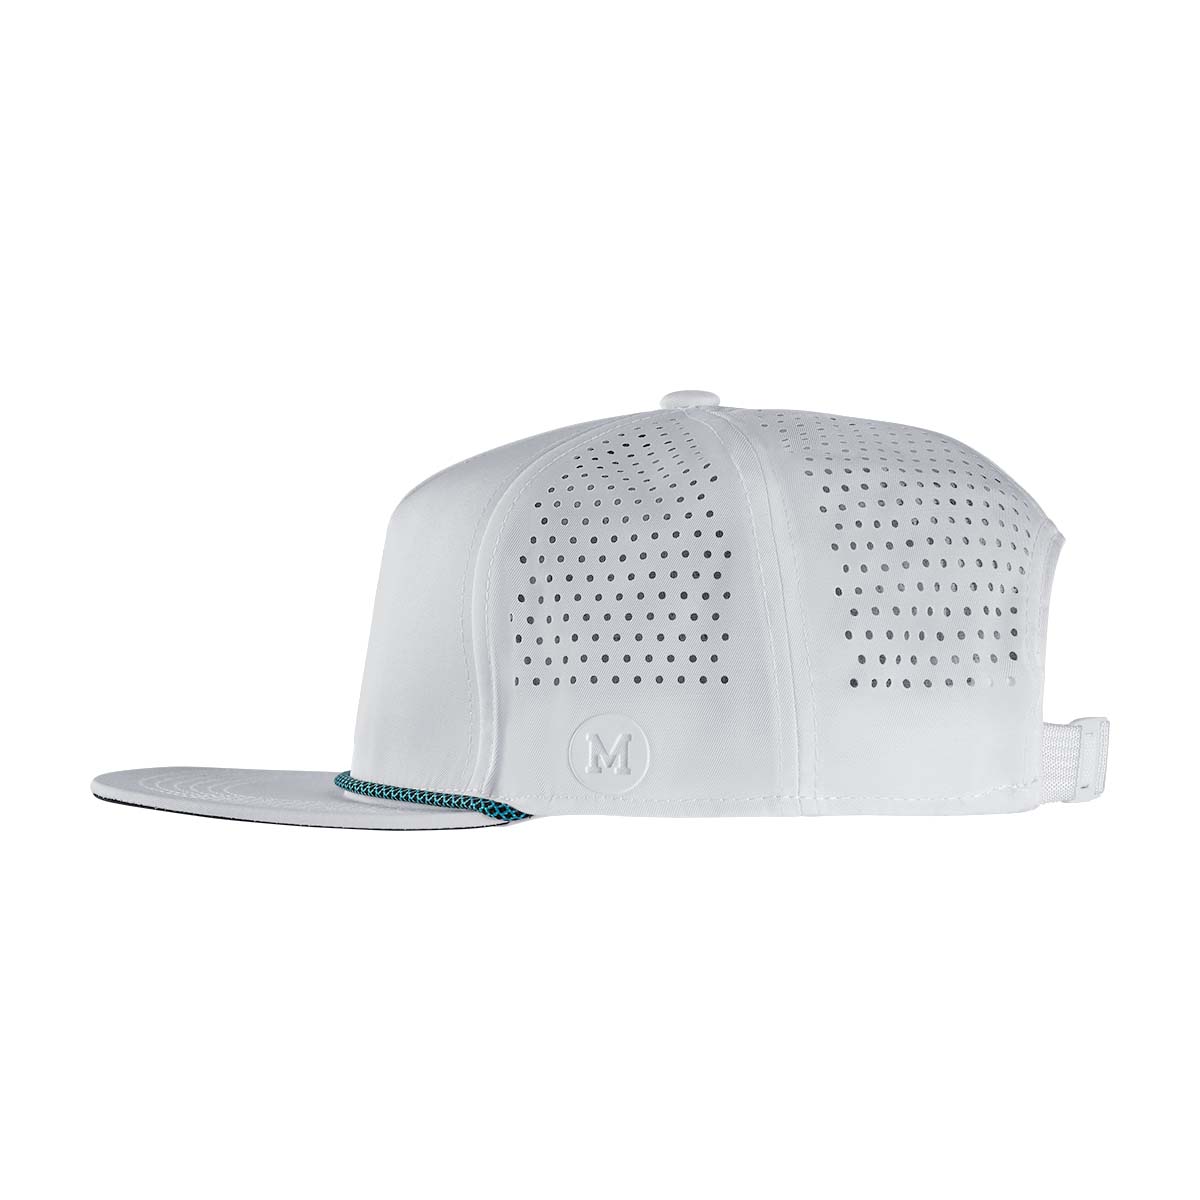 White Blank Rope Hat - Sleek Simplicity & Comfort